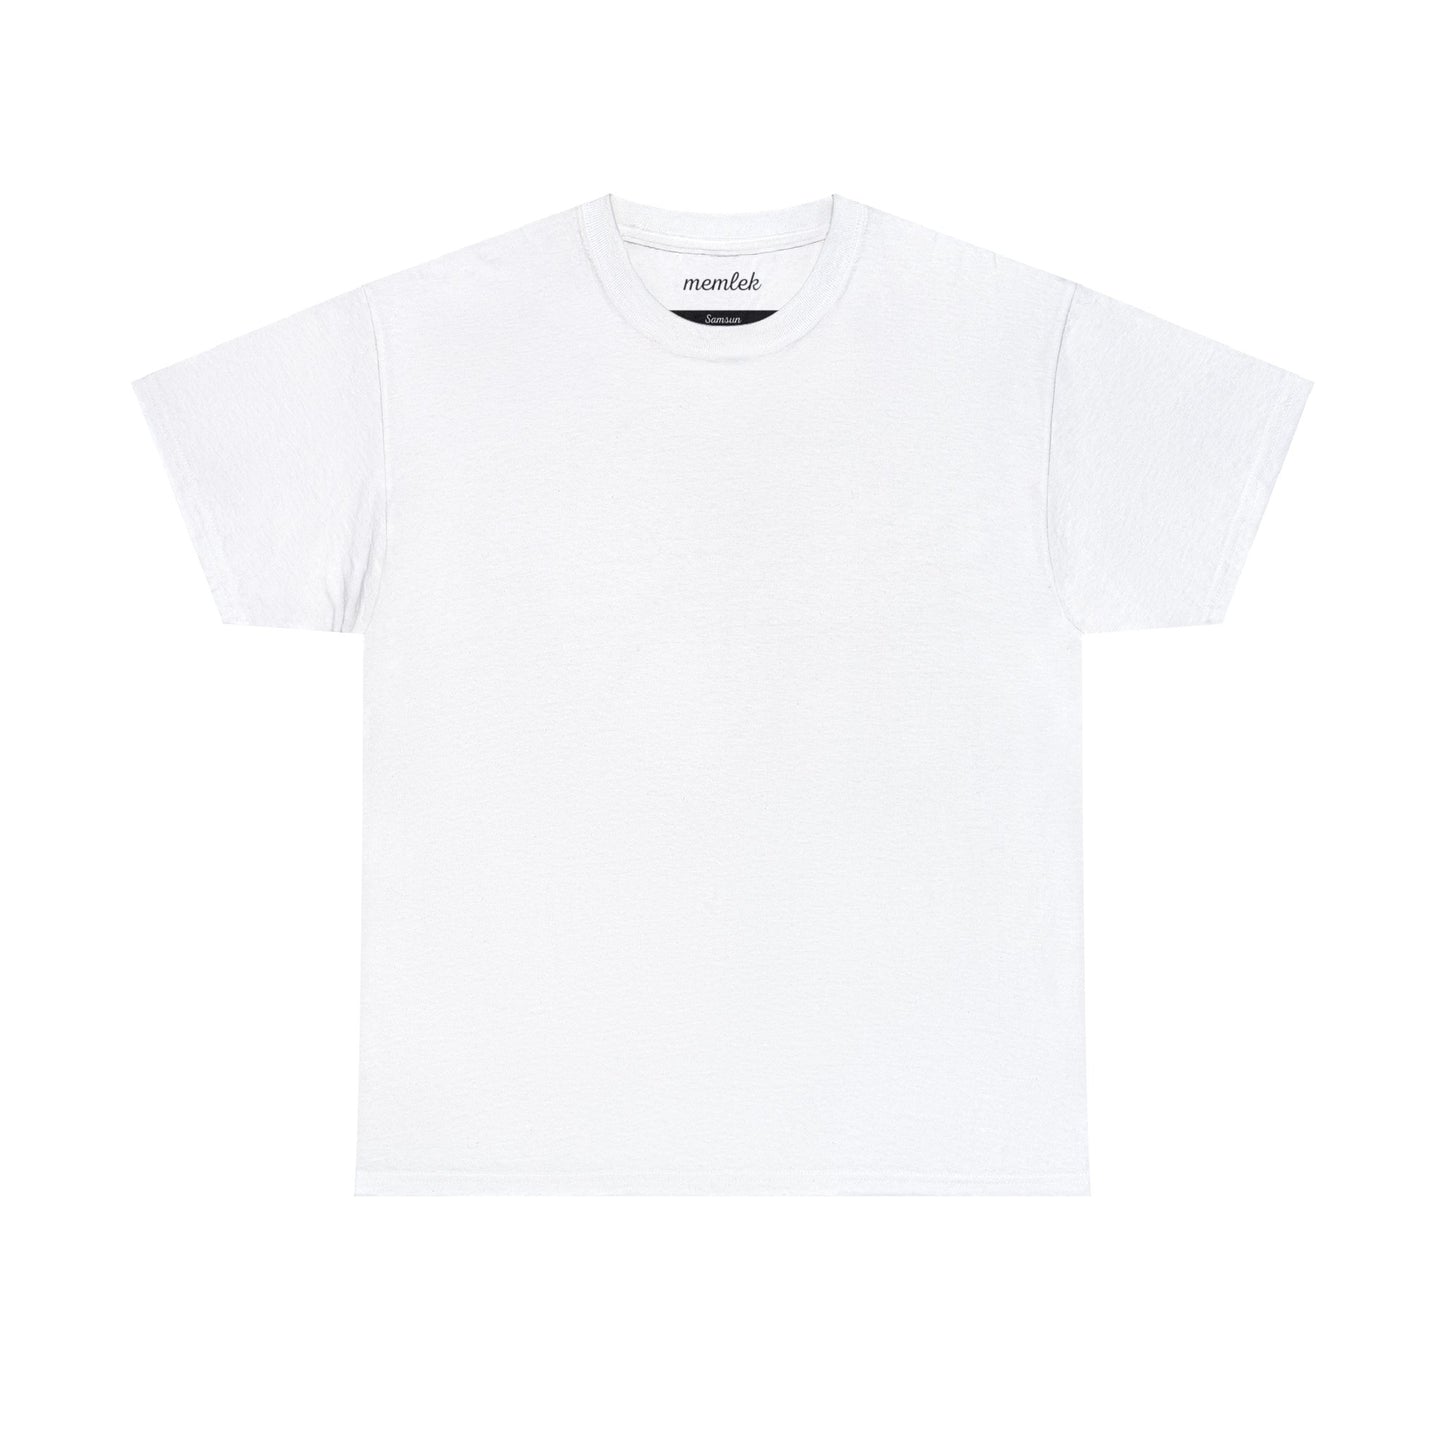 Kurt - 55 Samsun - T-Shirt - Back Print - Black/White